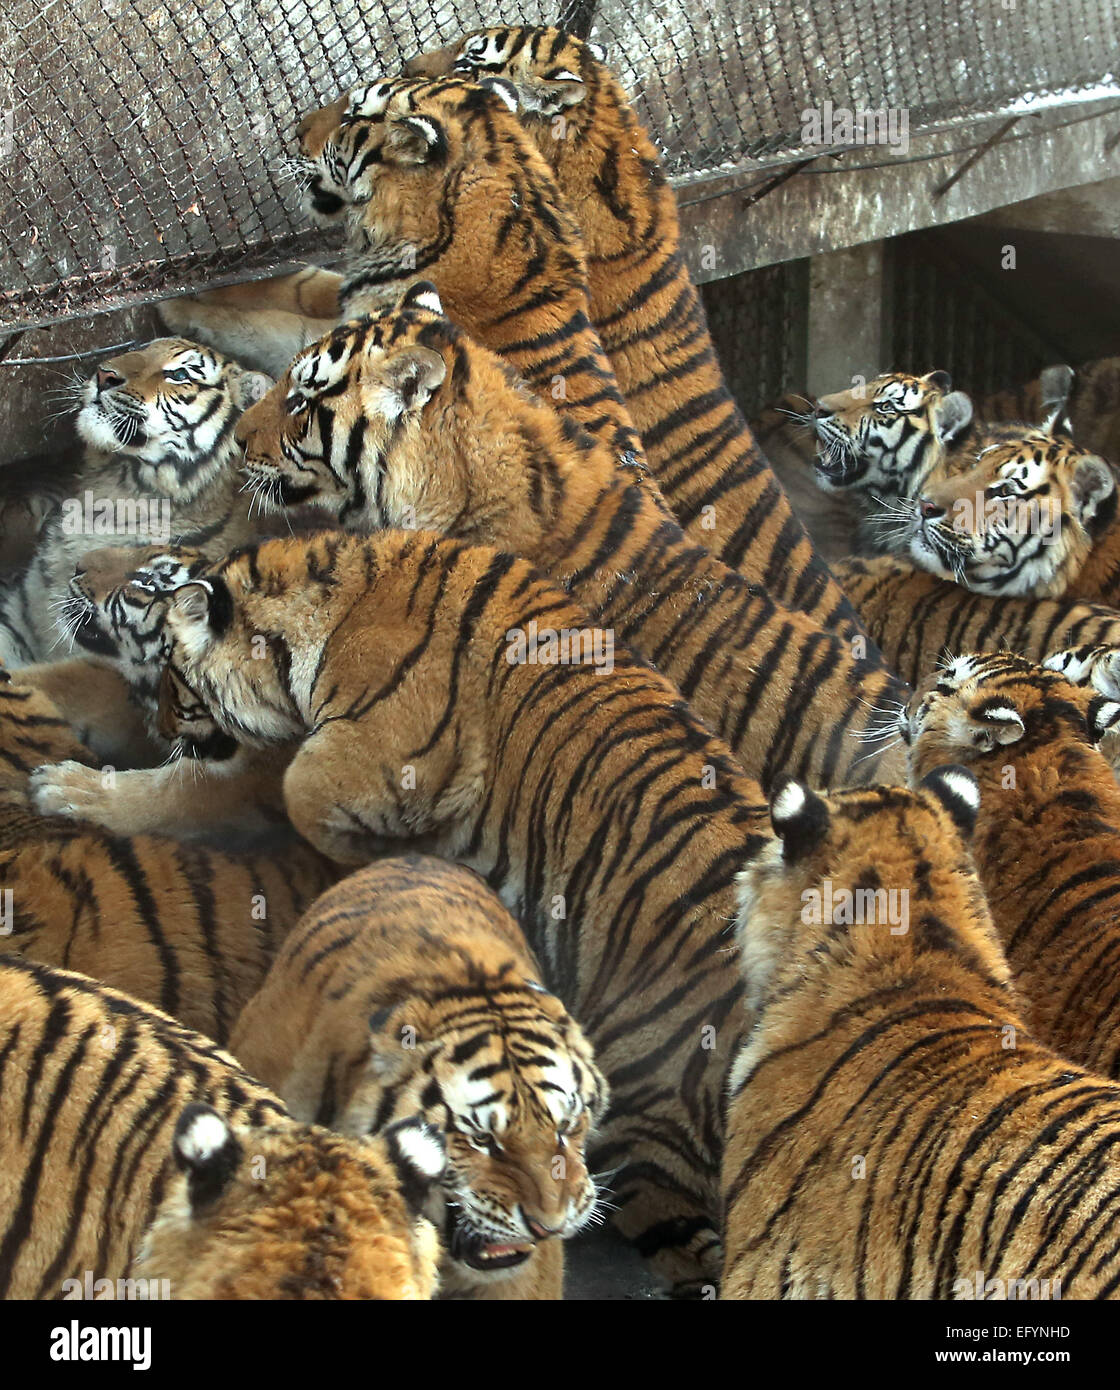 El 17 de enero, 2015 - Harbin, provincia de Heilongjiang, CHINA - Los  turistas visitan y alimentar a los tigres siberianos. junto con unos pocos  leones, en el parque de tigres siberianos